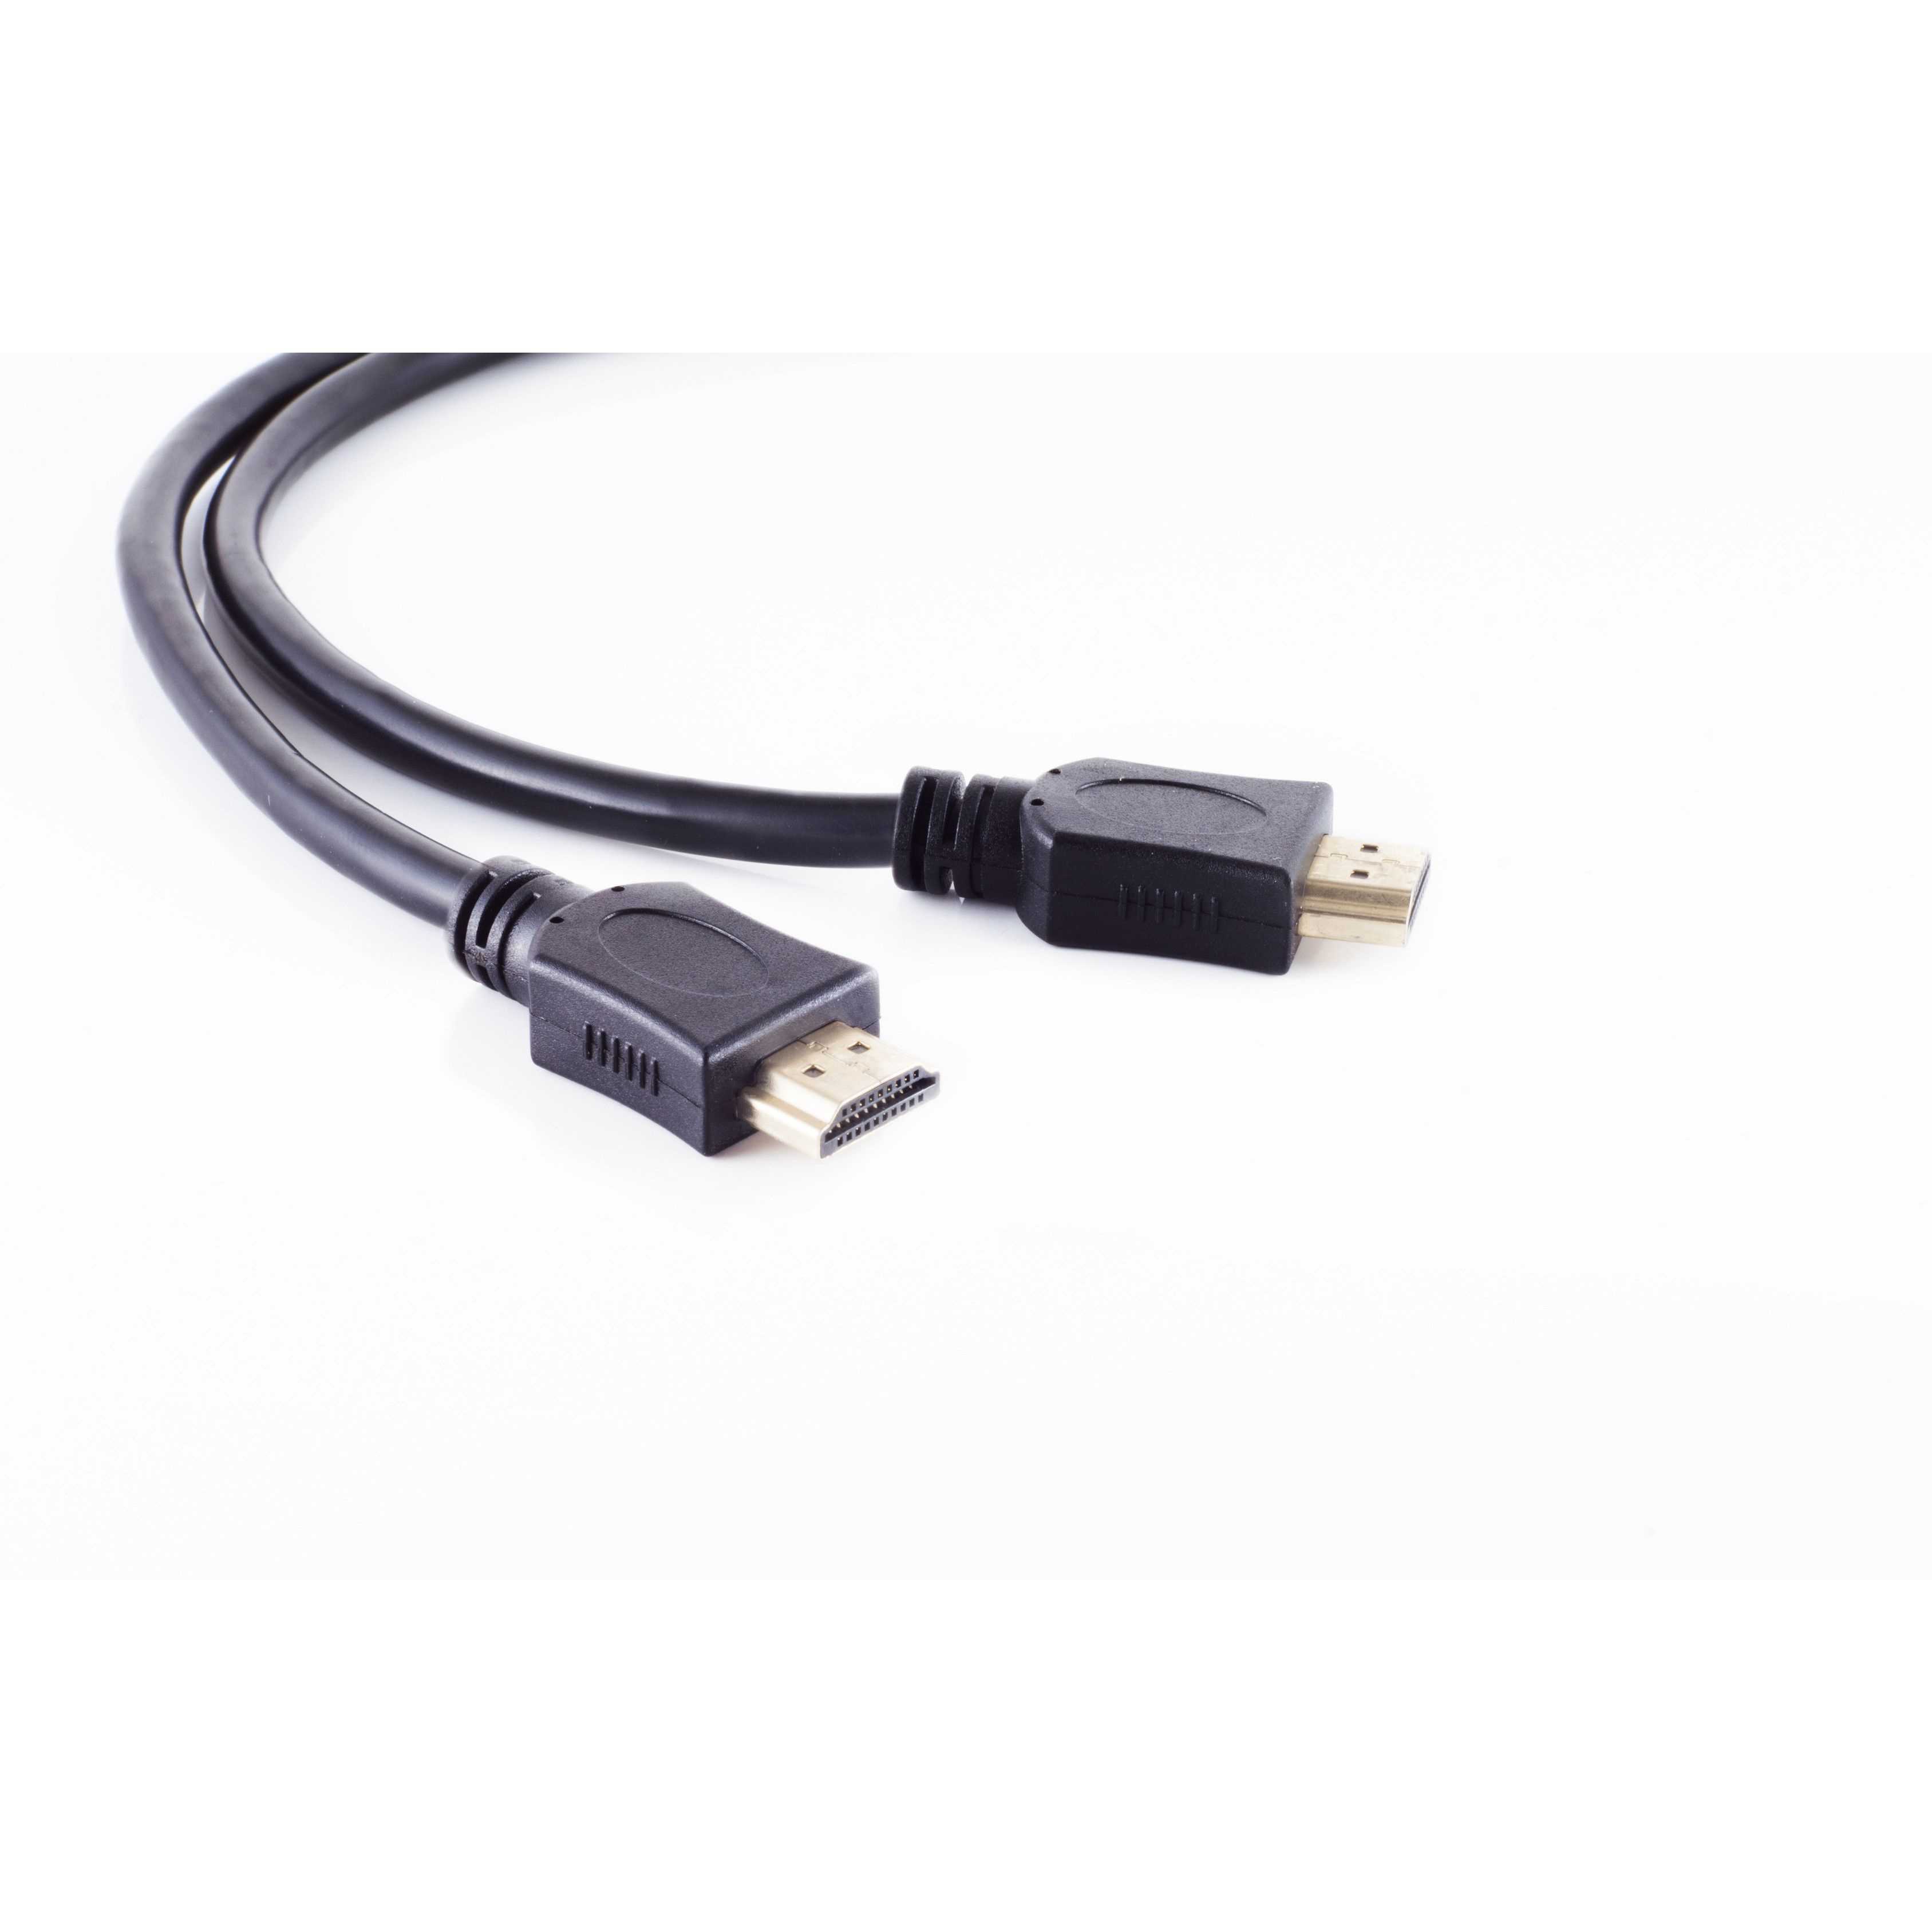 A-Stecker verg. HDMI HDMI CONNECTIVITY HEAC HDMI / A-Stecker Kabel MAXIMUM S/CONN 0,5m